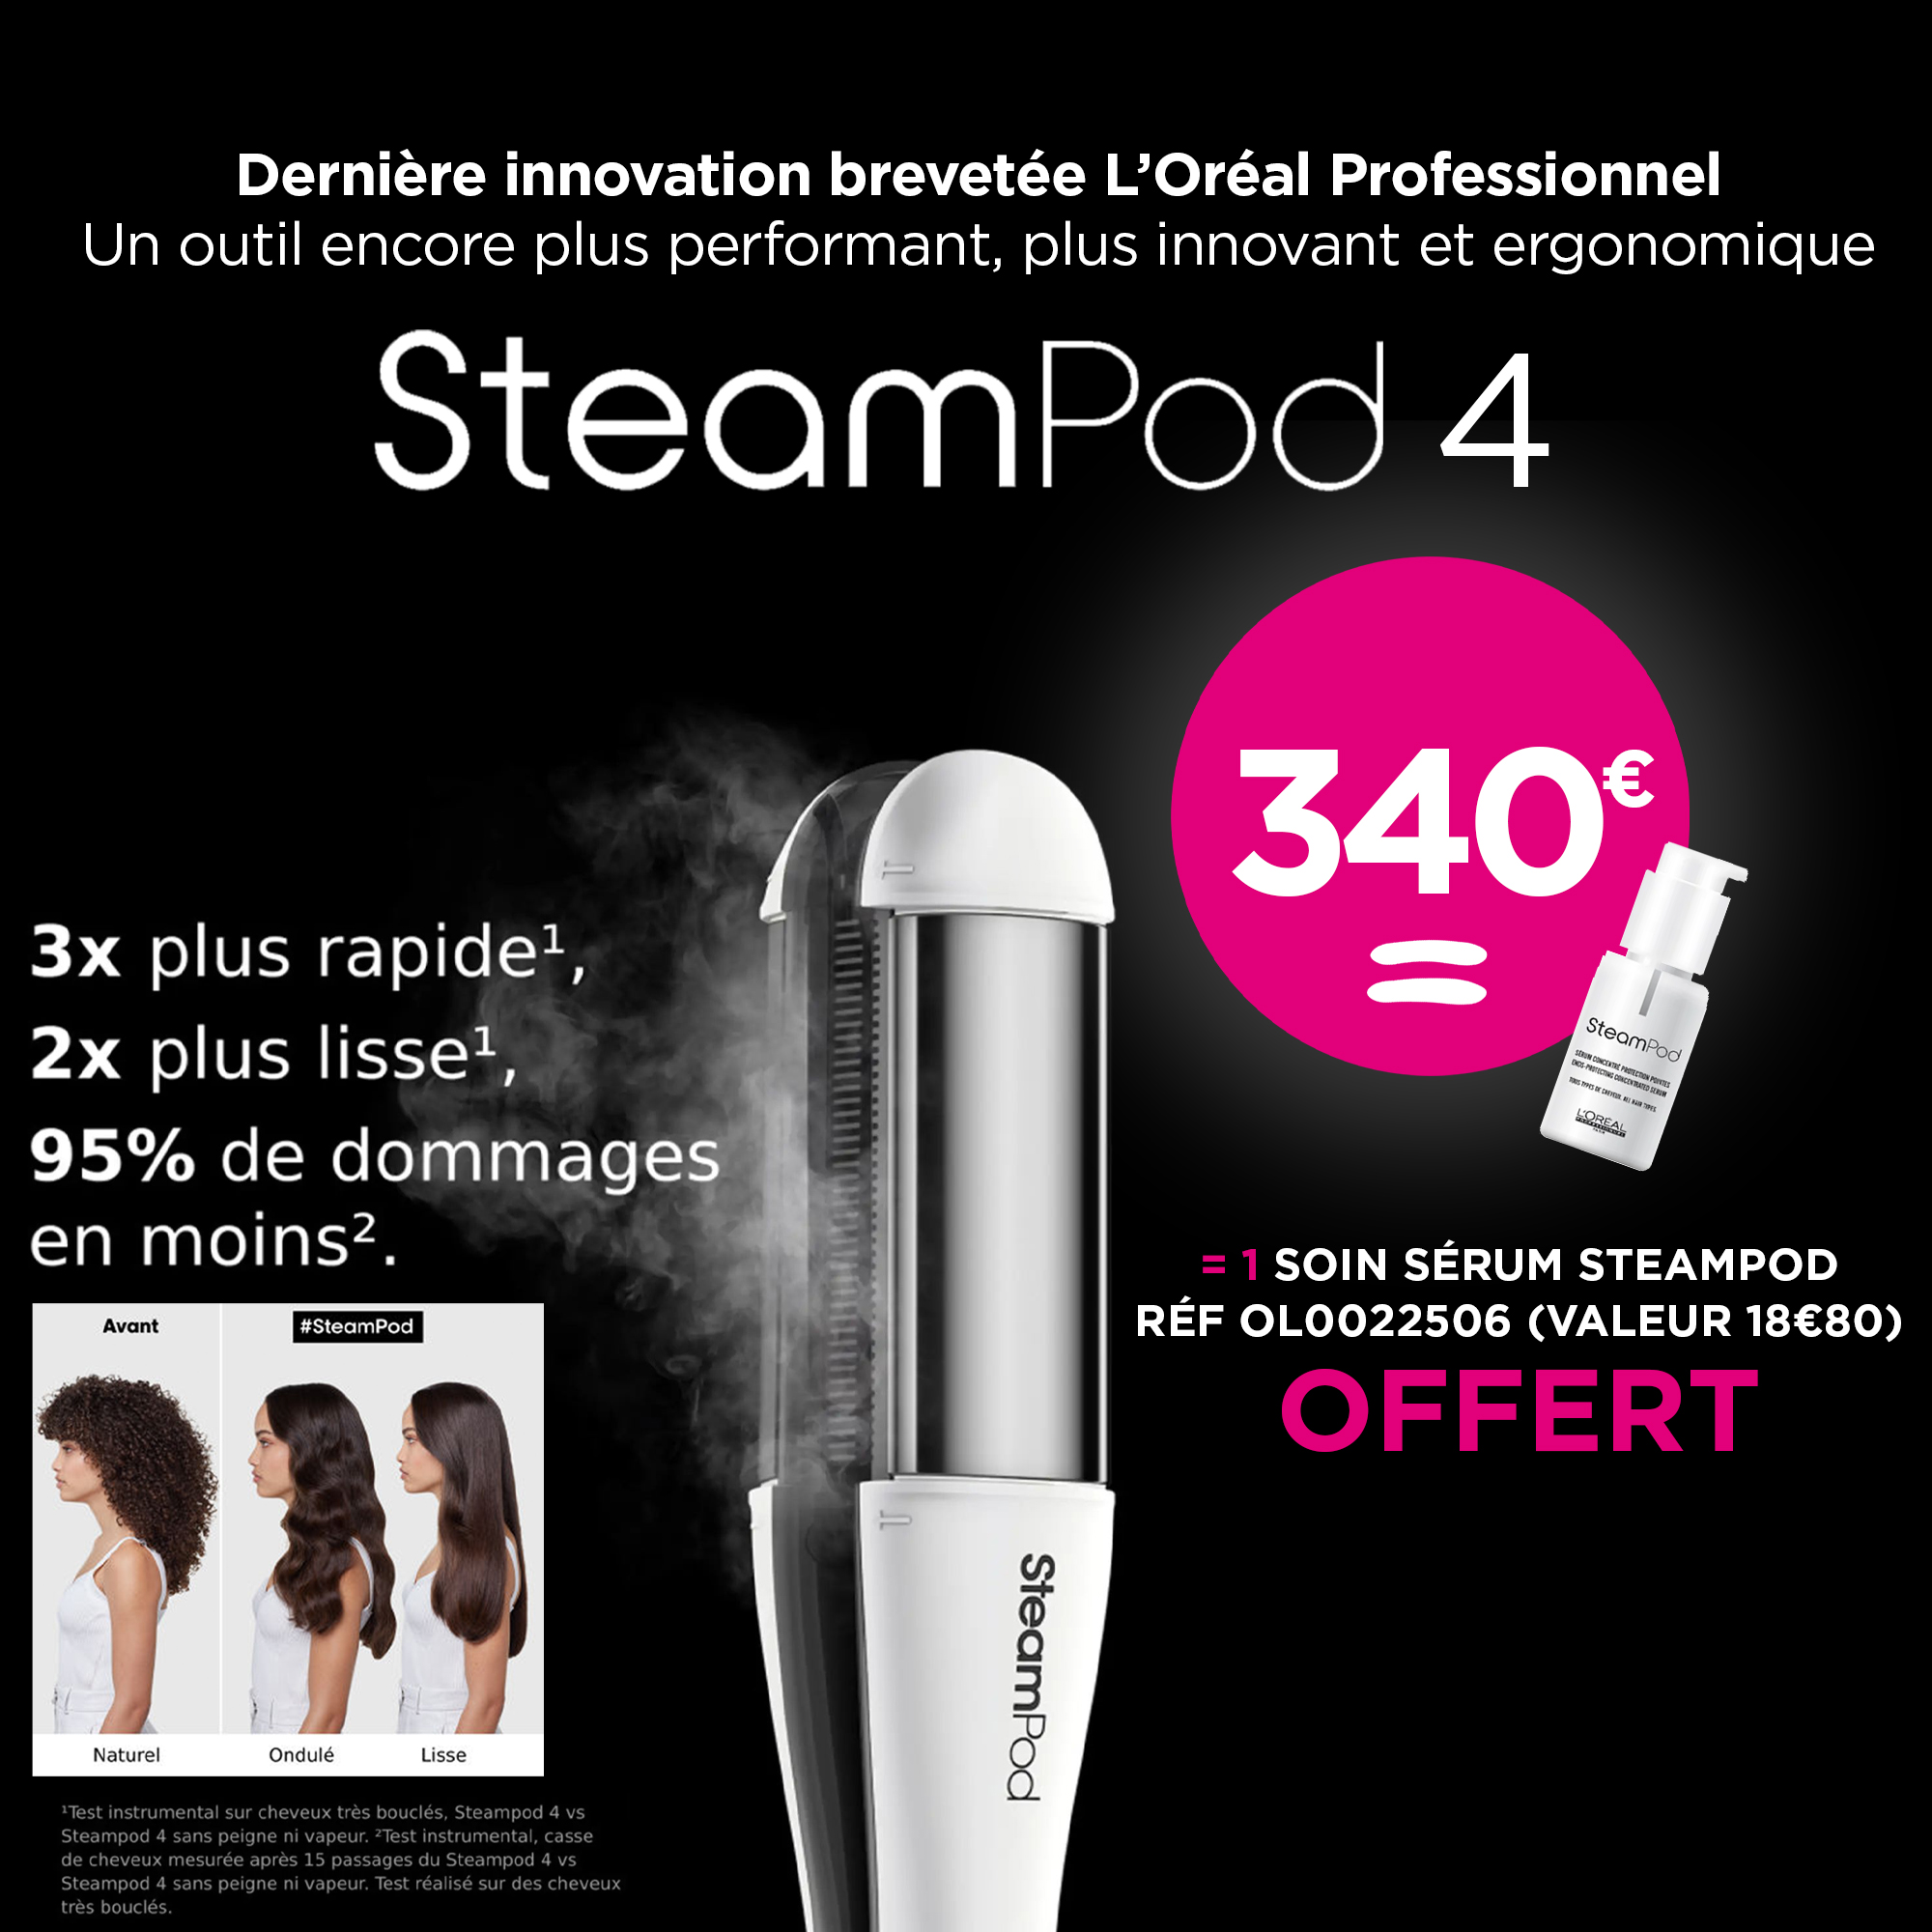 Découvrez le nouveau  Steampod 4.0 L'Oréal Professionnel x Rowenta Lisseur boucleur vapeur 2en 1 à 340€ seulement !